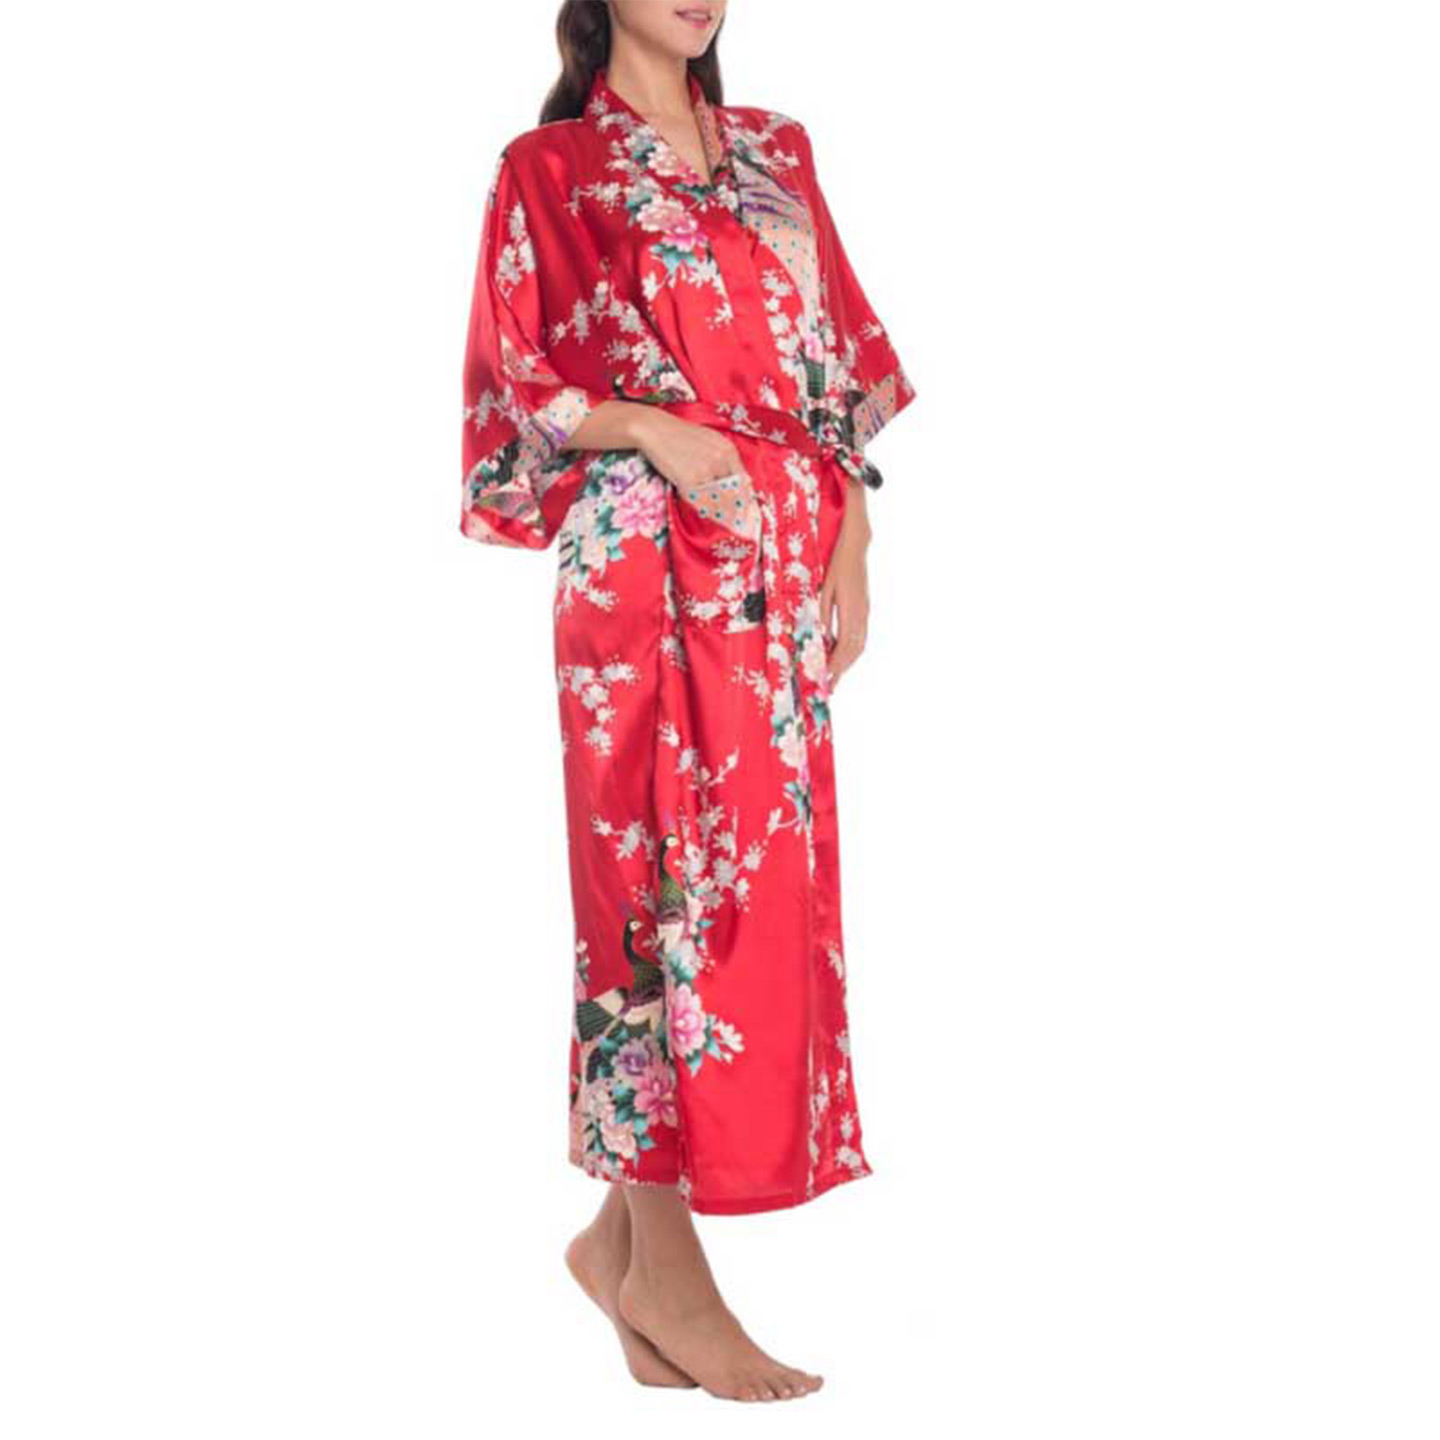 Kimono morgenkåpe i silke